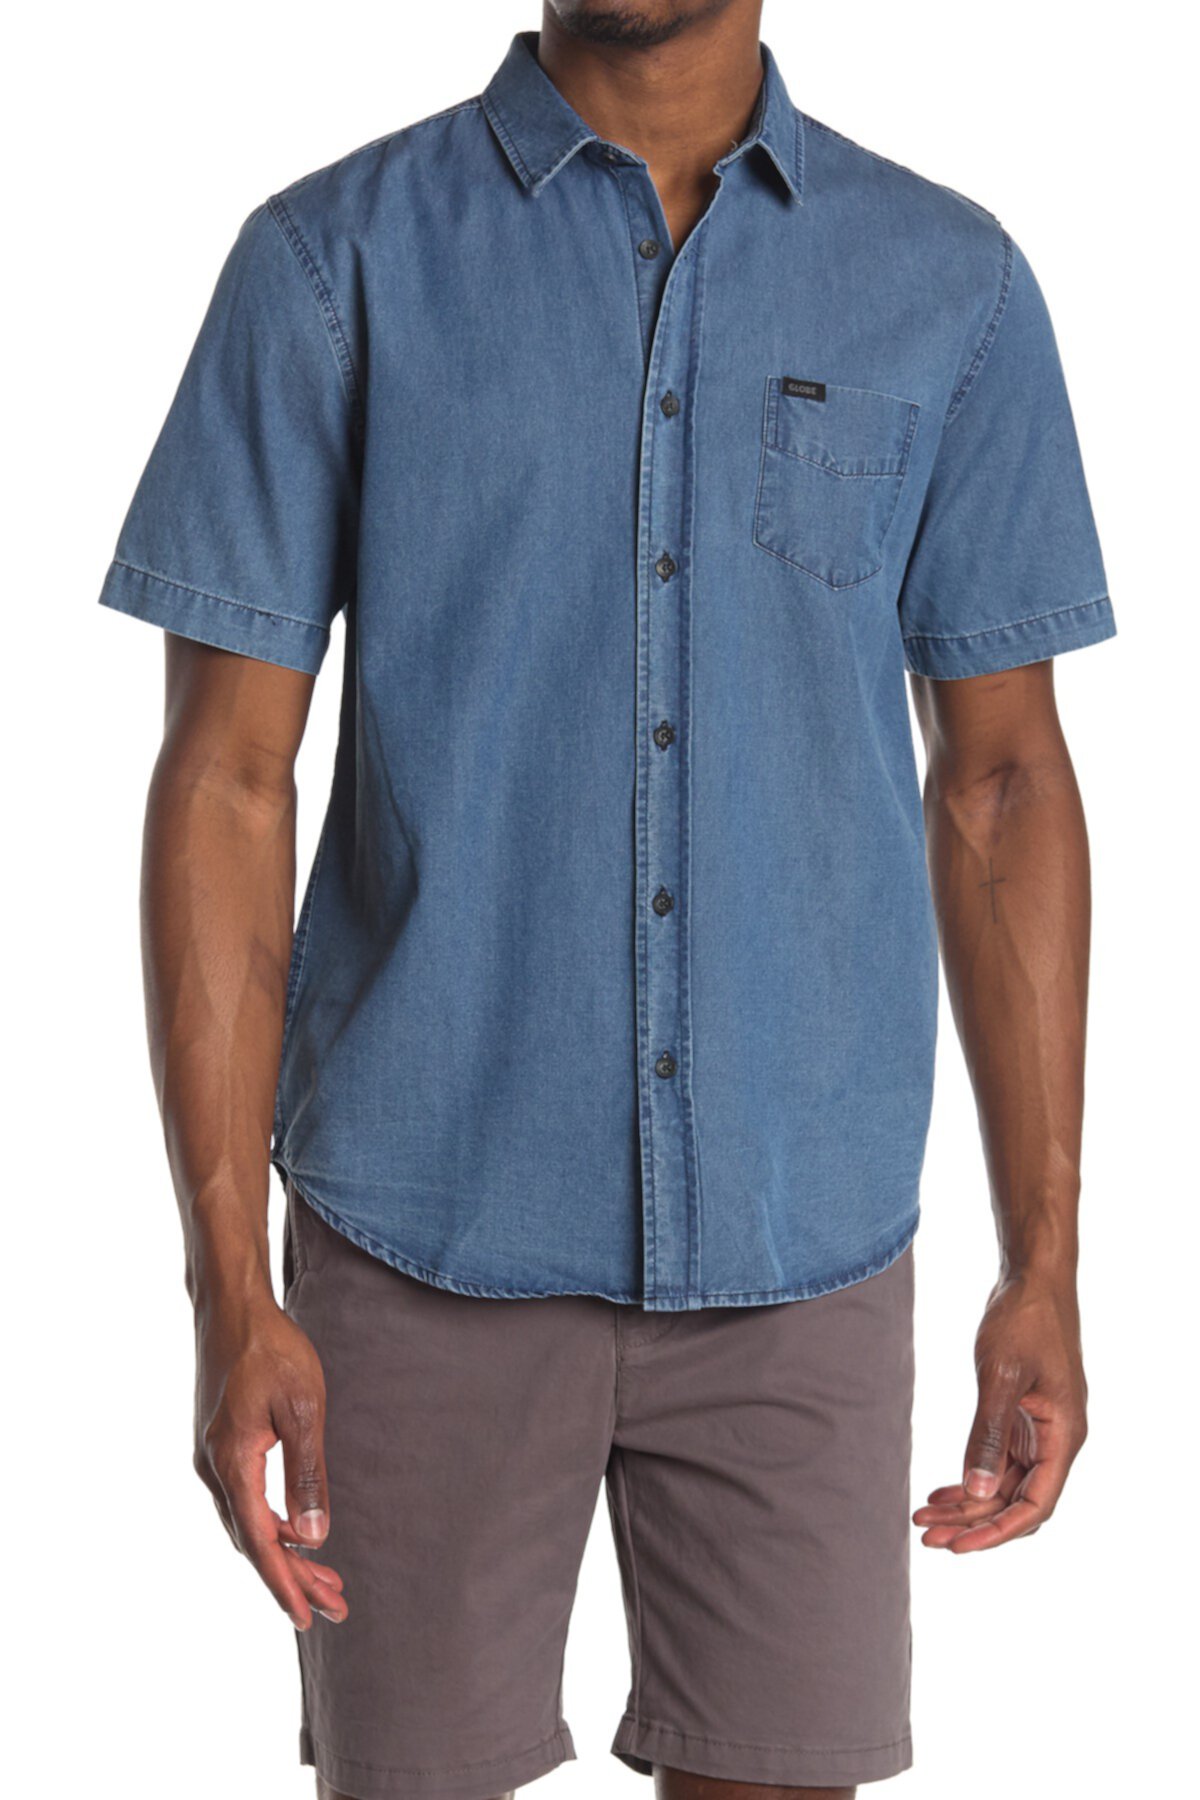 Tidal Short Sleeve Shirt Globe